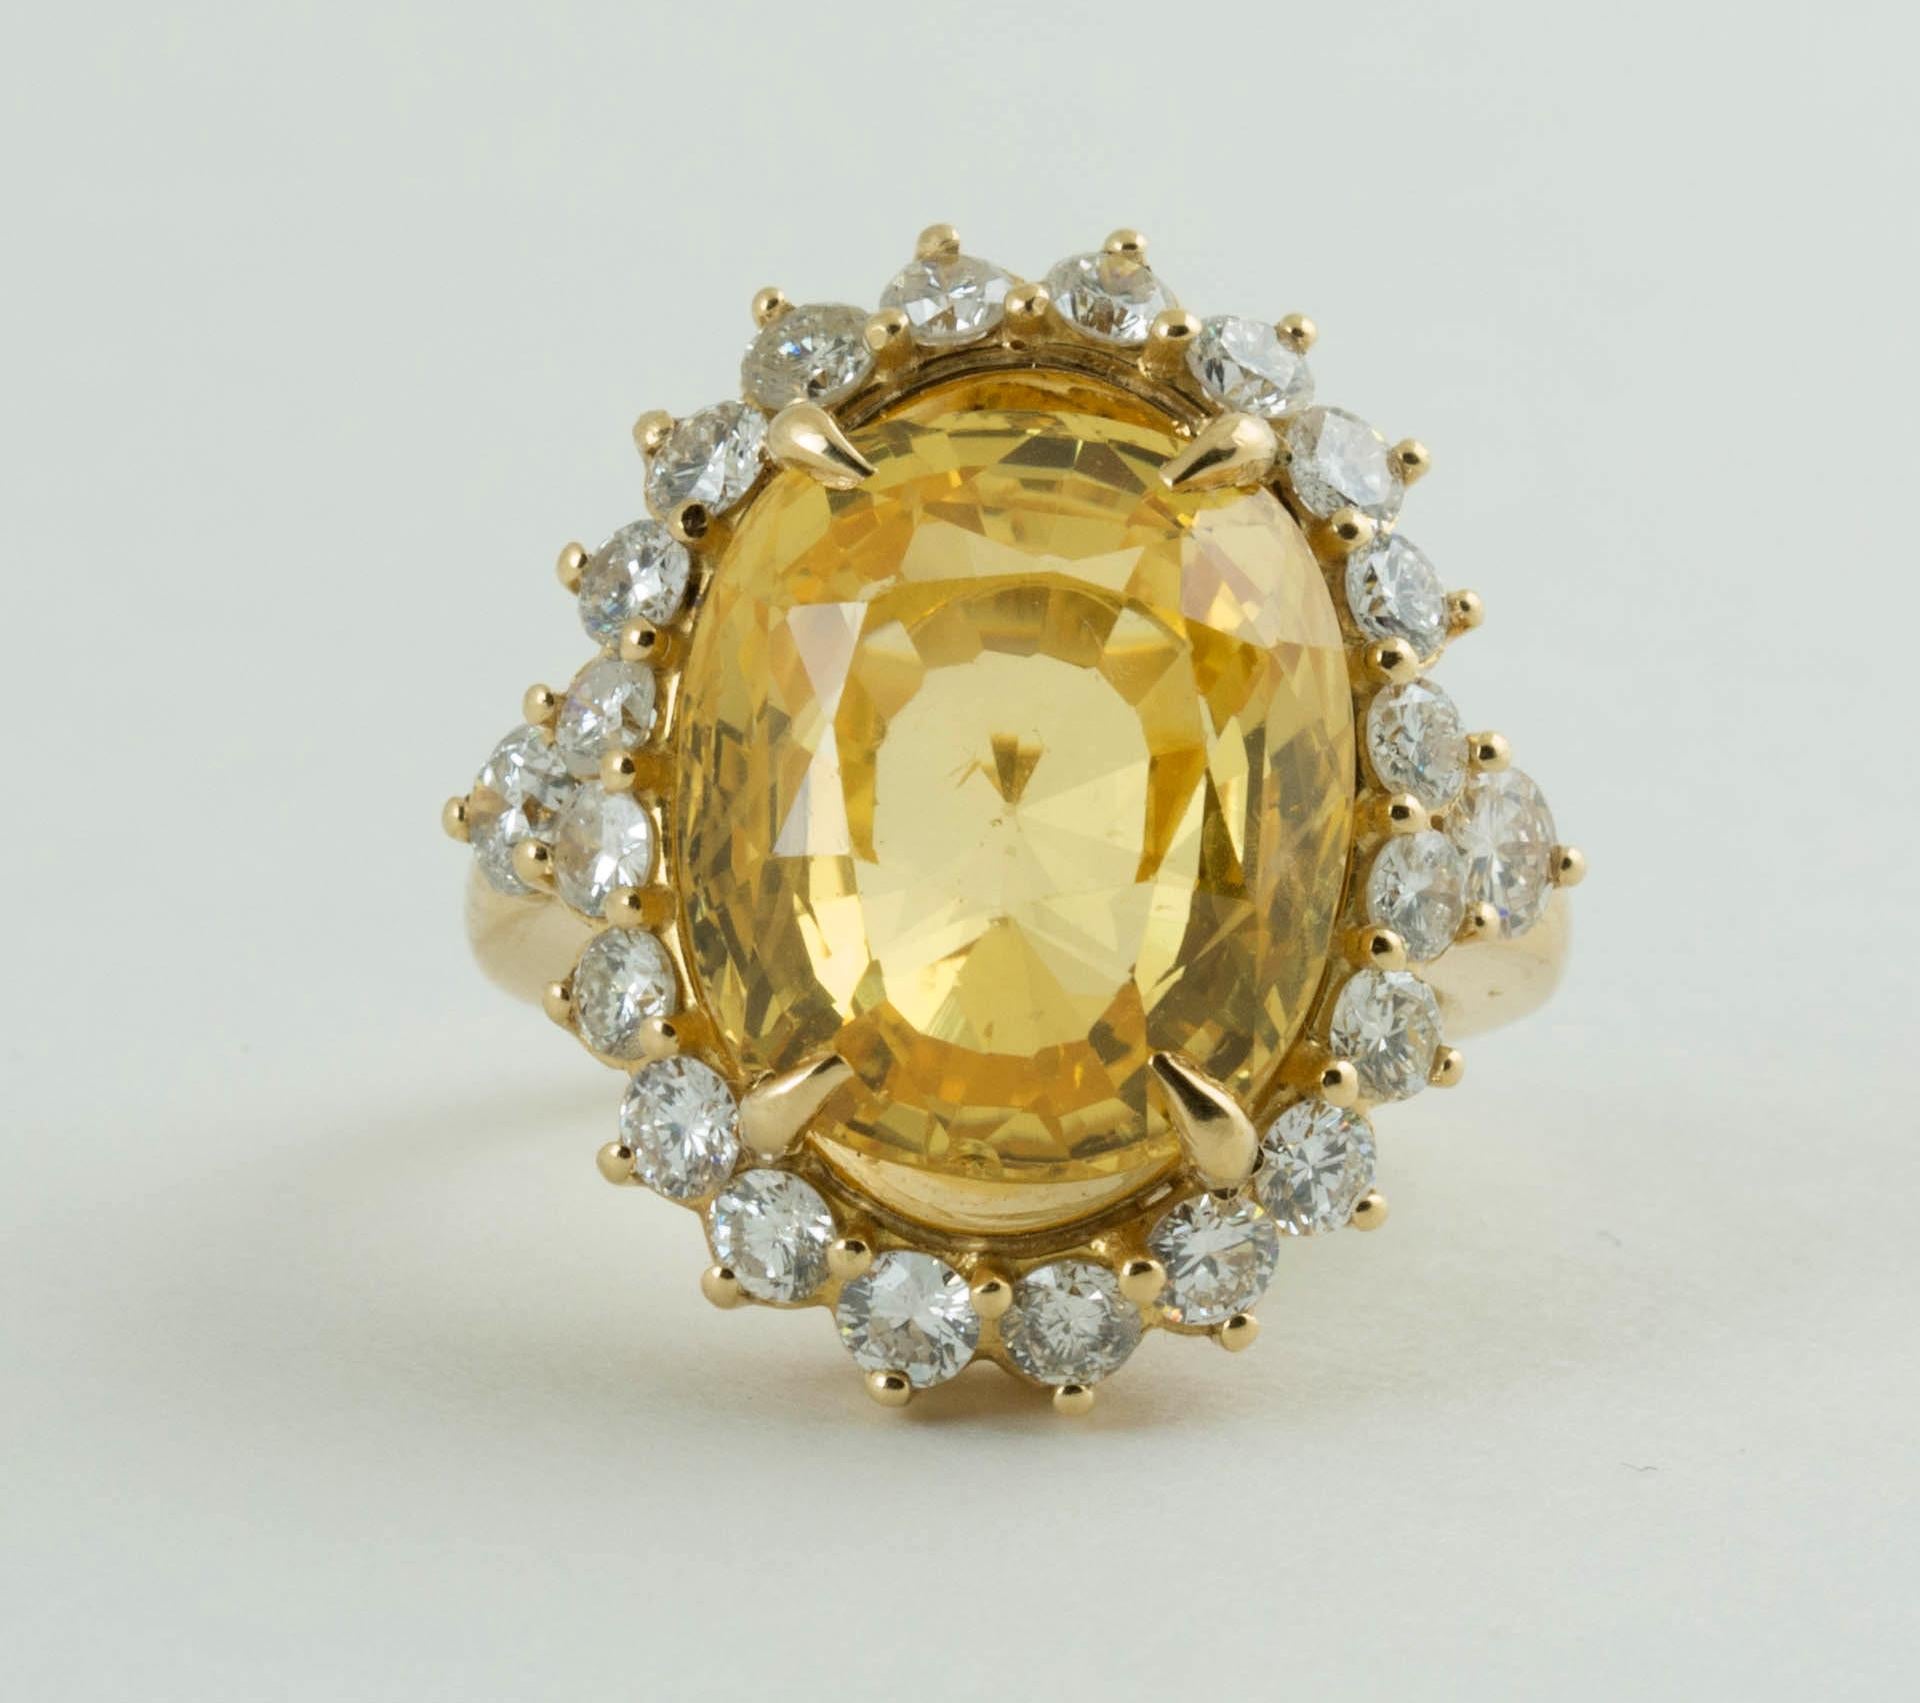 Eine antike 14 Karat Kissen gemischt geschnitten natürlichen keine Hitze gelben Saphir und Diamant-Ring.
Größe der Saphir ist 14,5 mm x 12,35 mm x 8,15 mm. es ist mittel-Ton, starke Sättigung, gelben Farbton. kommen mit Schweizer Gemmologischen